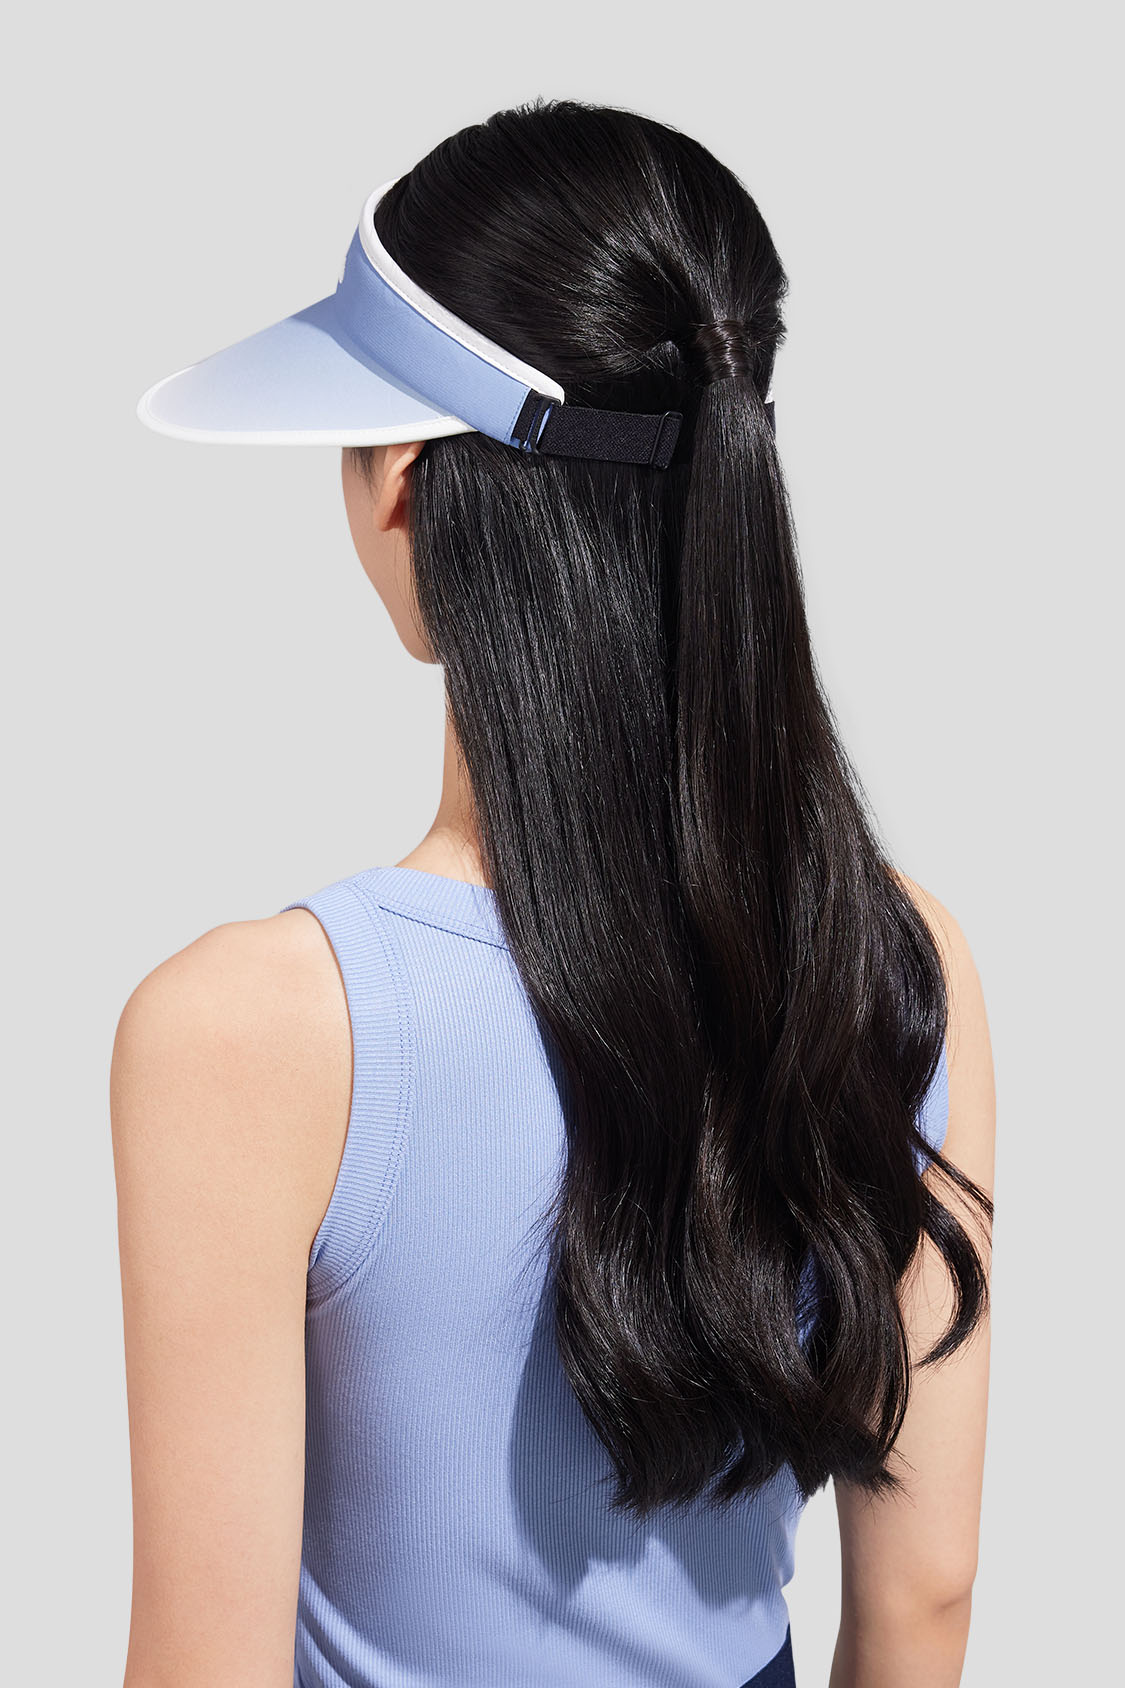 beneunder women's sun hats #color_gradient blue